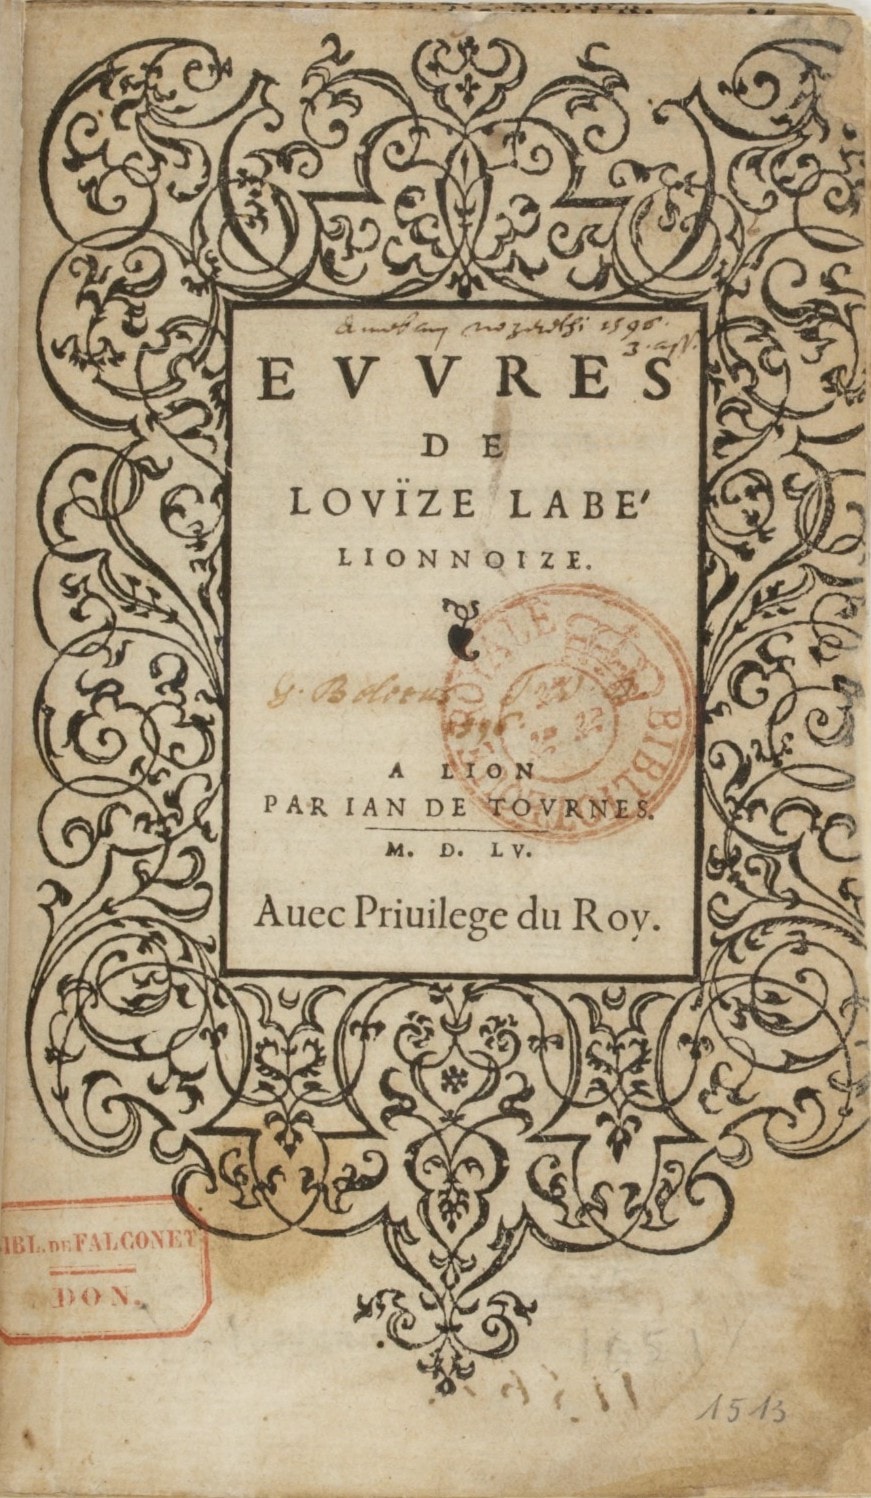 Première page de la version originale du livre « Oeuvres » de Louise Labé.